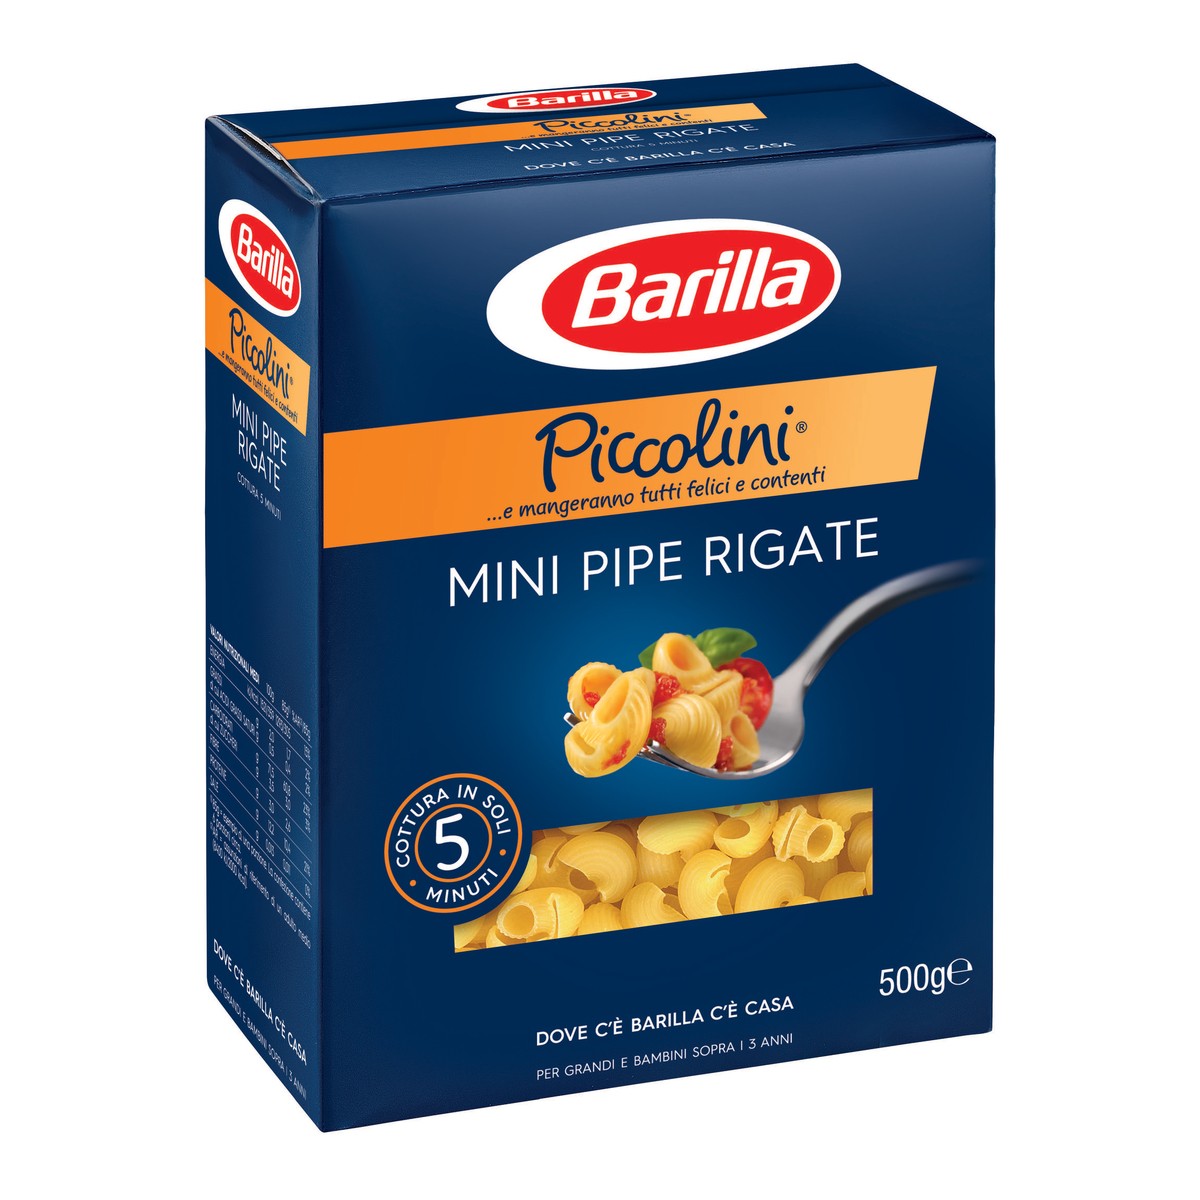 BARILLA Mini pipe rigate Piccolini